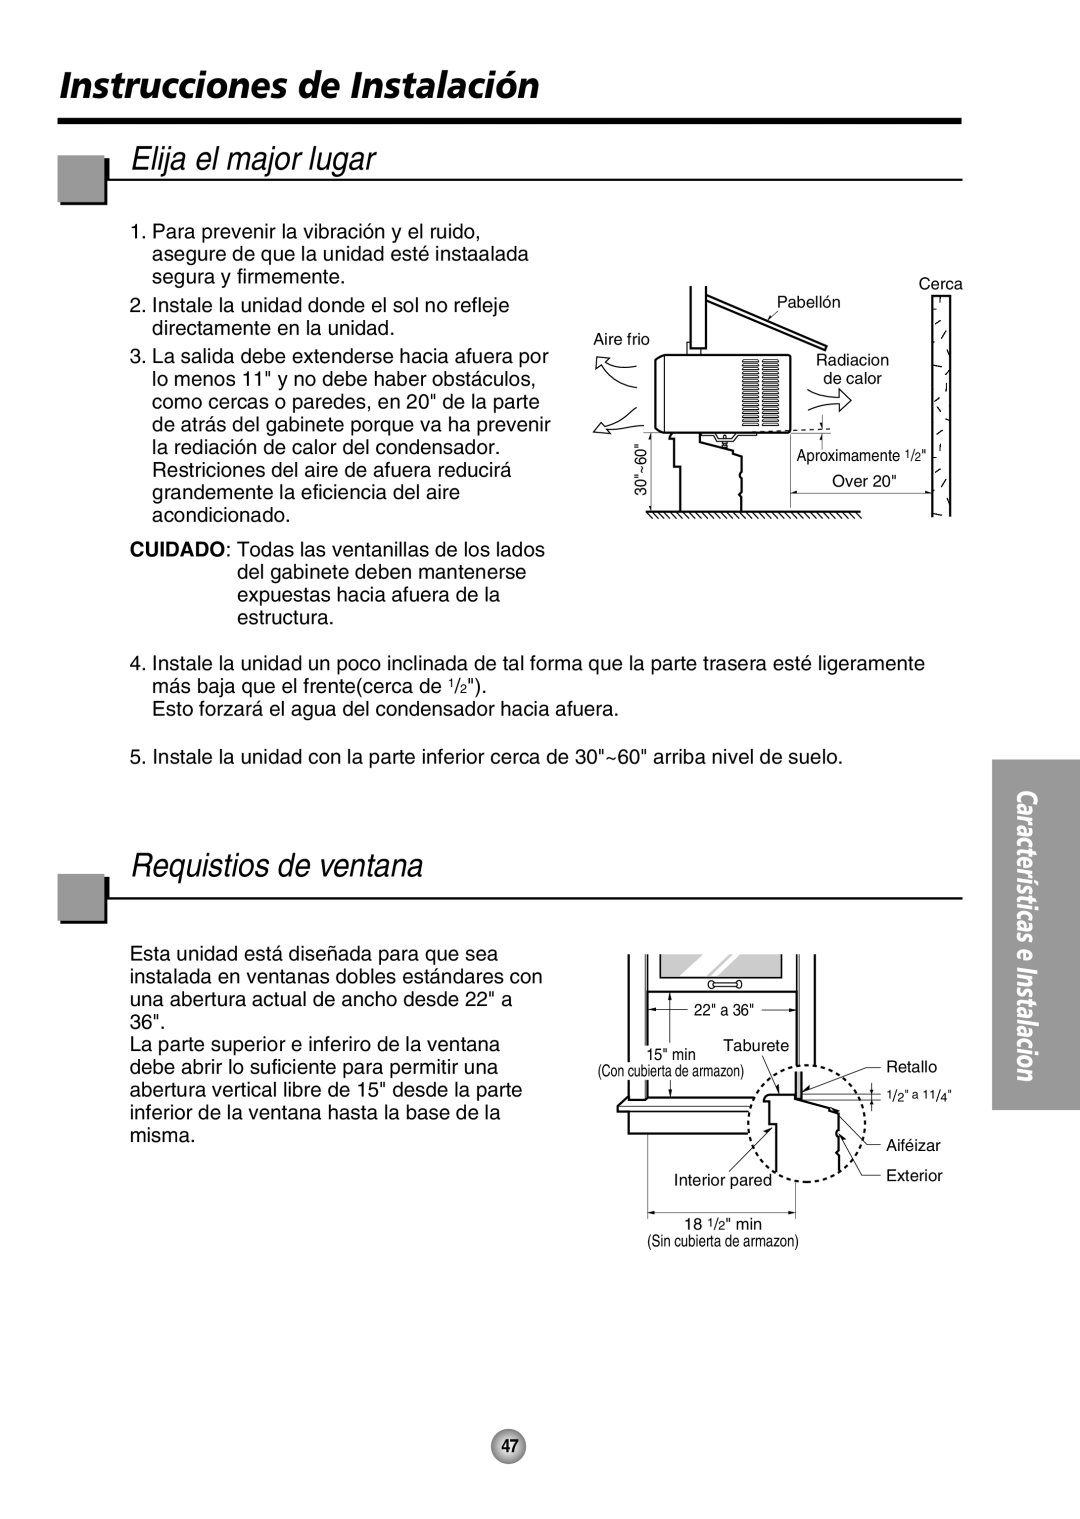 Panasonic CW-XC64HU manual Instrucciones de Instalación, Elija el major lugar, Requistios de ventana 